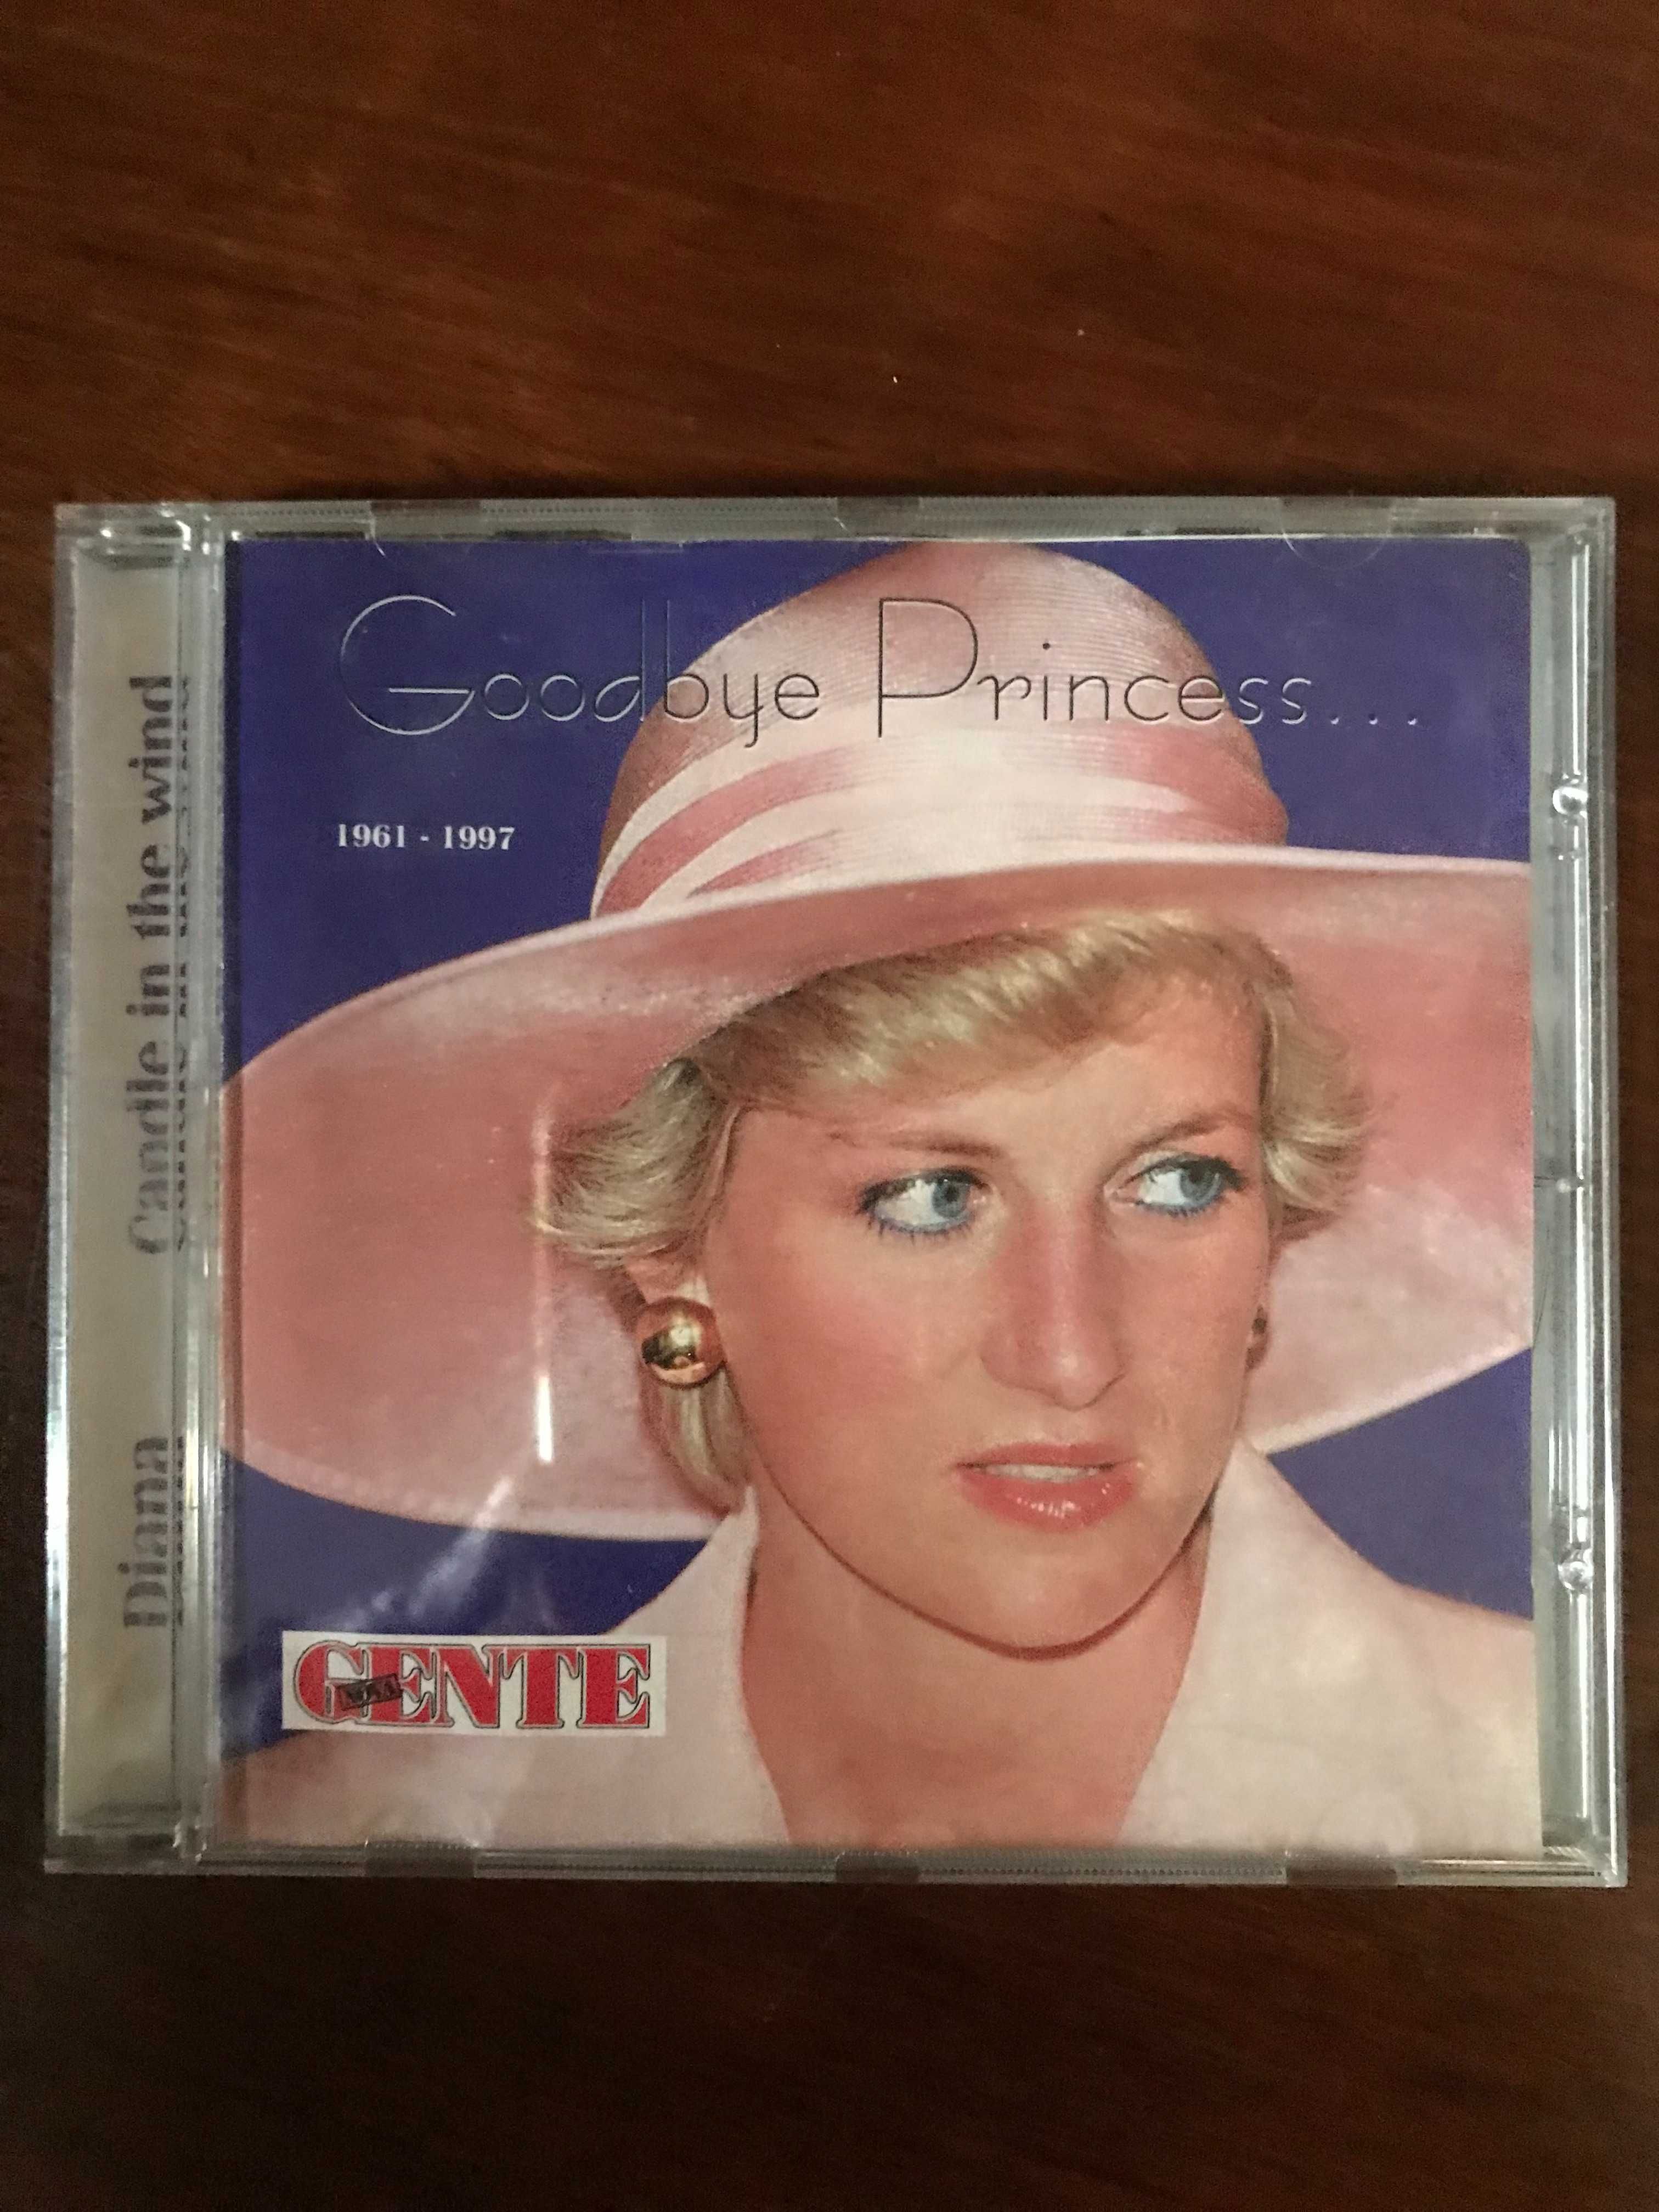 CD Música "Goodbye Princess..."